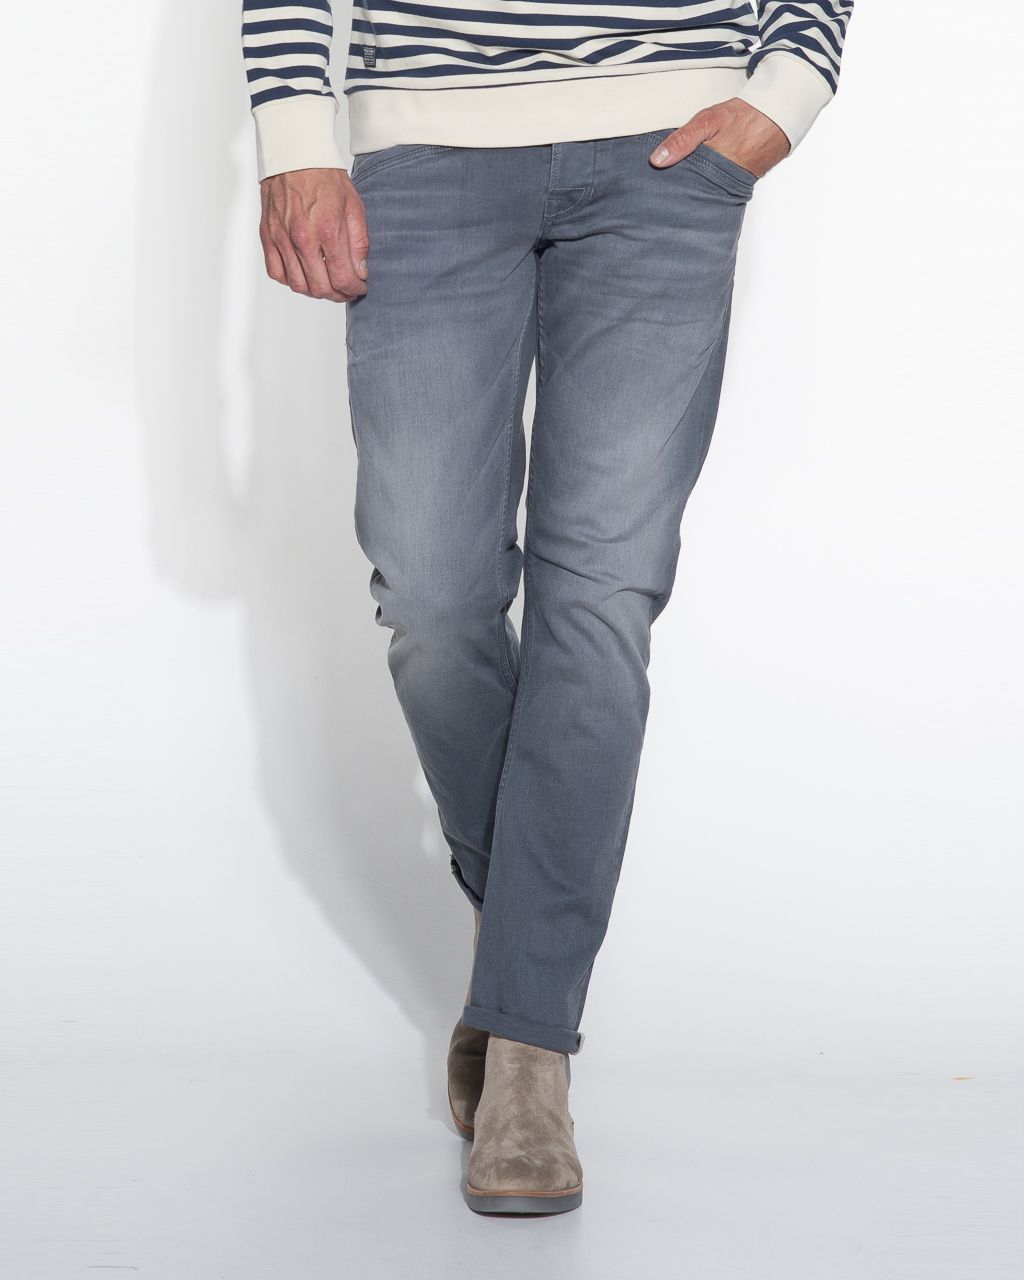 Hangen levering aan huis Plaatsen PME Legend Curtis Jeans | Shop nu - OFM.